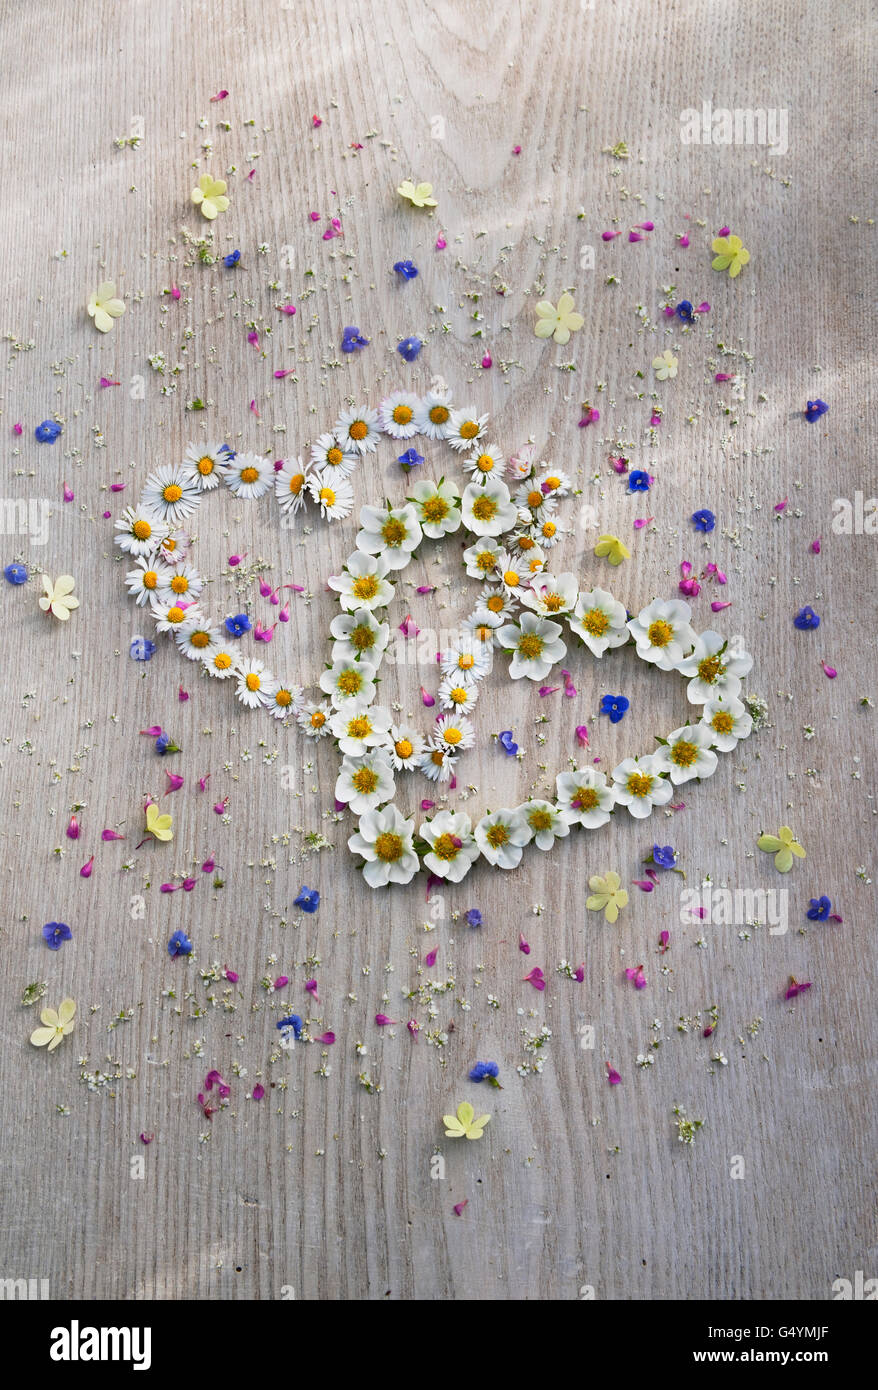 Corazones entrelazados de daisy flores y fresas en un tablero pintado de blanco, salpicado de pequeñas flores de verano. Foto de stock